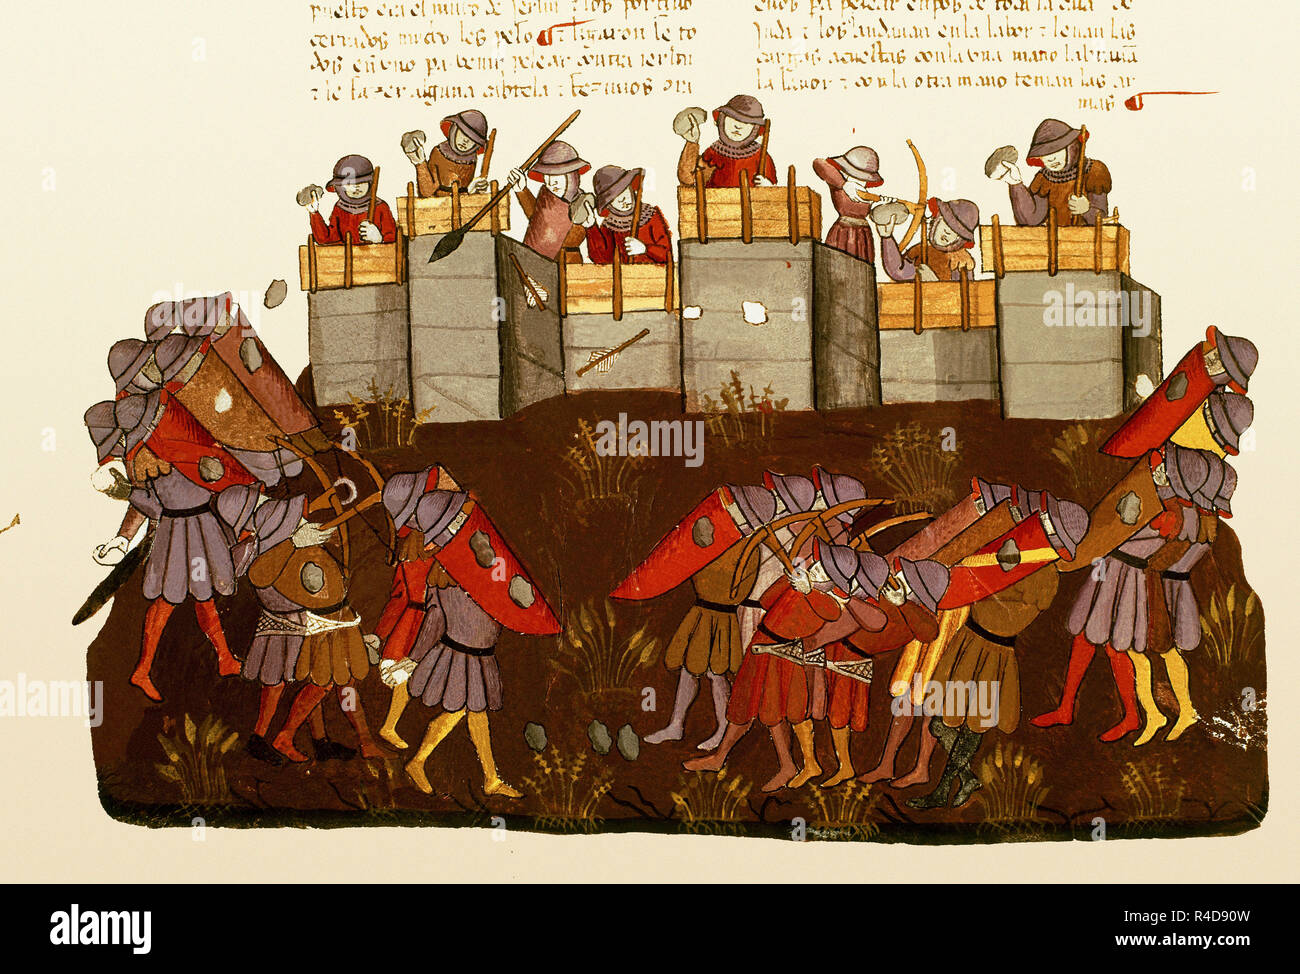 BIBLIA ALBA-NEHEMIAS RECONSTRUYE LA MURALLA DE JERUSALEN Y LOS ENEMIGOS SE BURLAN ATACANDO(CONJ 1528. Location: PRIVATE COLLECTION. MADRID. SPAIN. Stock Photo